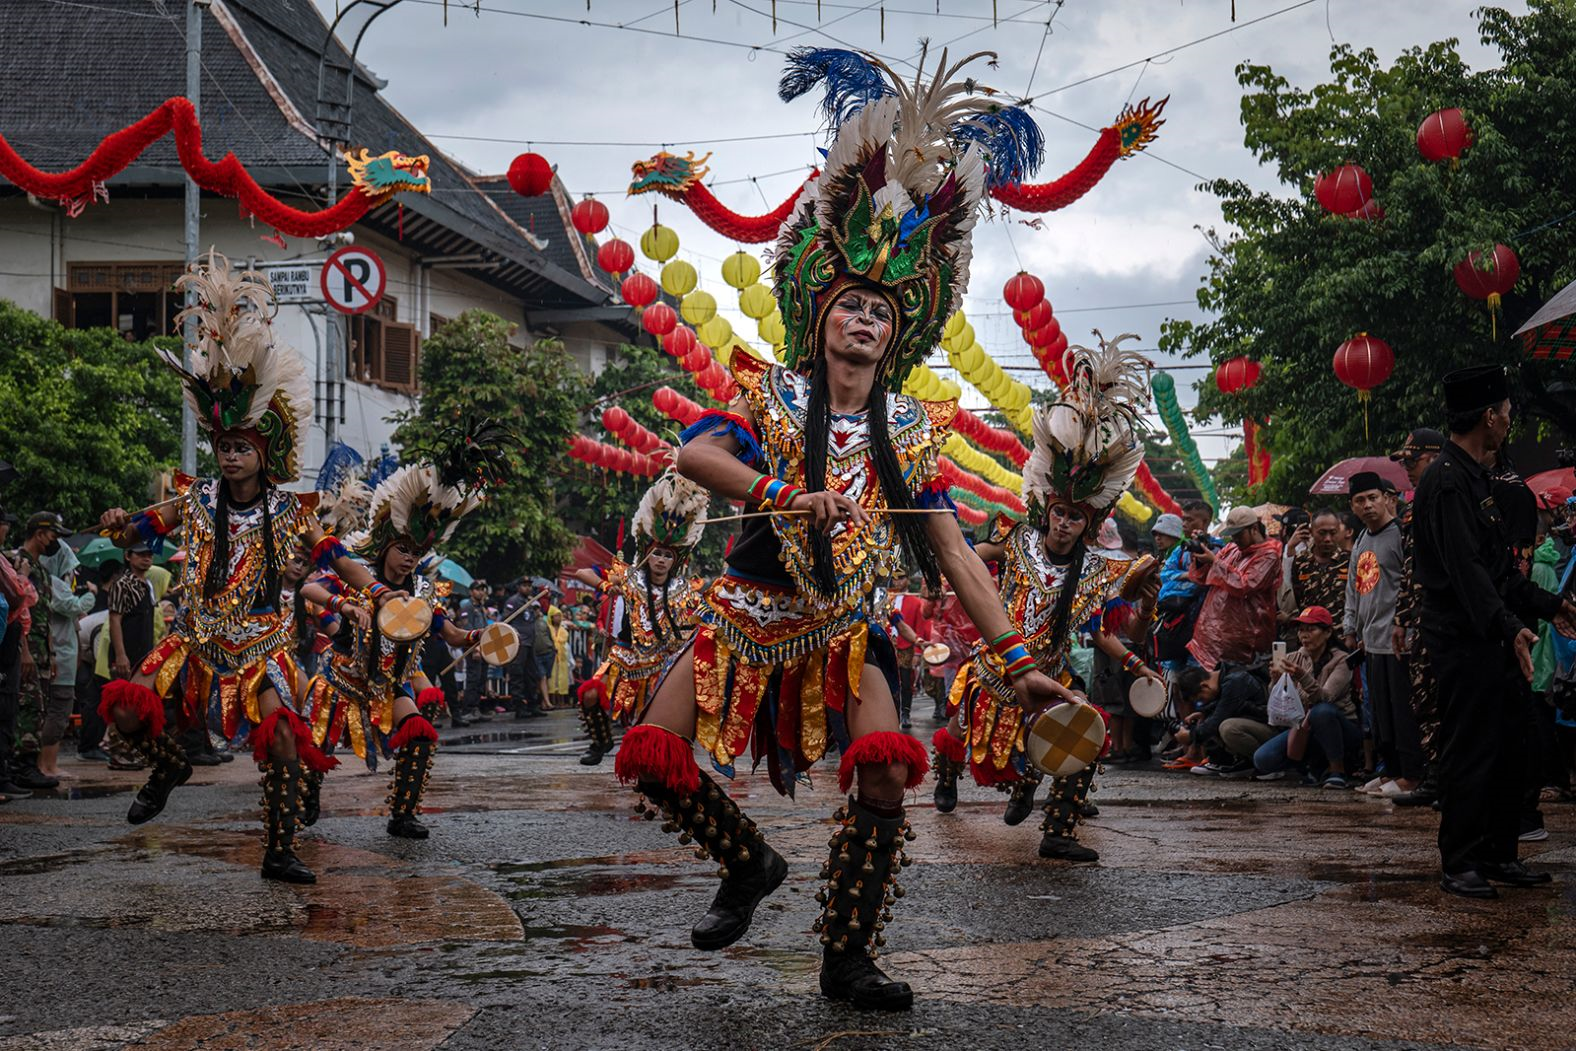 Vũ công hóa trang và nhảy vũ điệu truyền thống trong lễ hội Grebeg Sudiro trong dịp đón Tết Nguyên đán ở thành phố Solo, Indonesia.